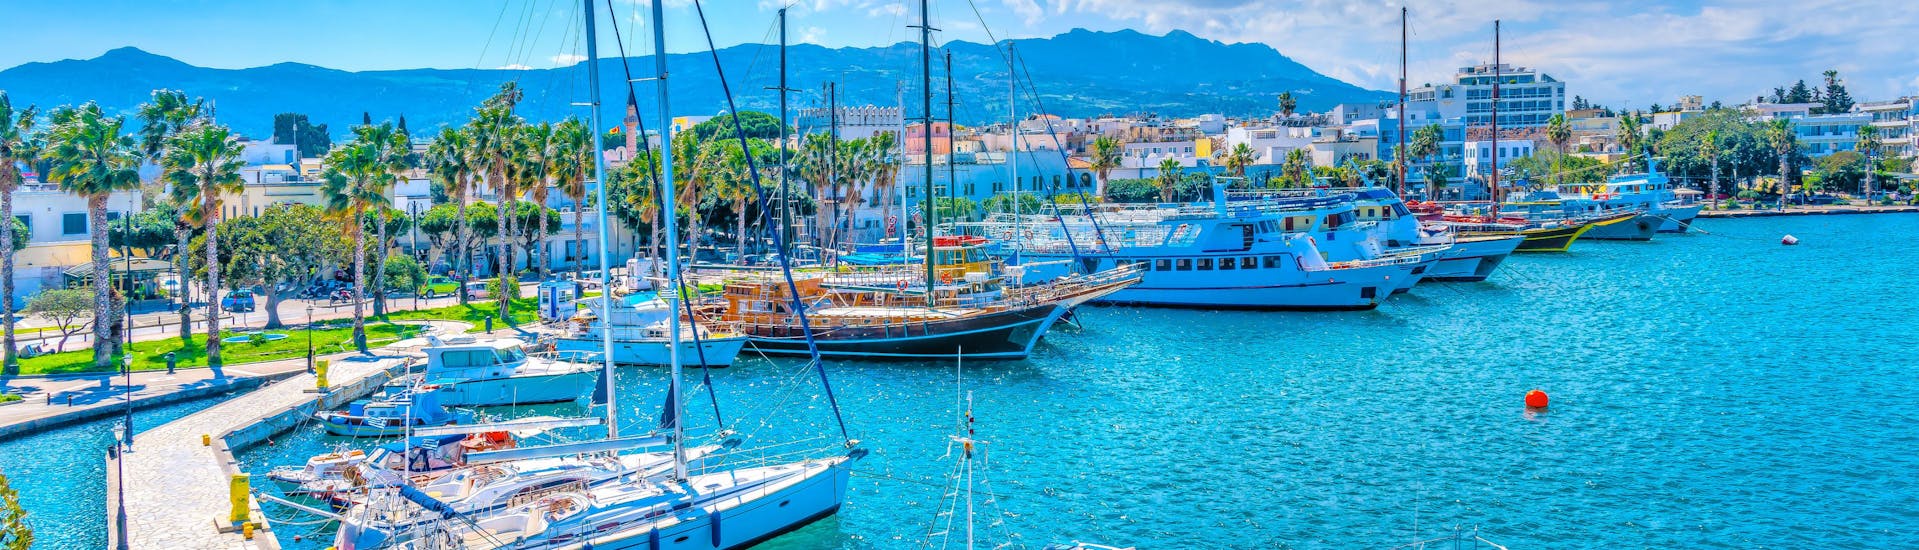 Hafen voller Boote, bereit für Bootstouren zu den drei Inseln Kalymnos, Plati und Pserimos von Kos aus